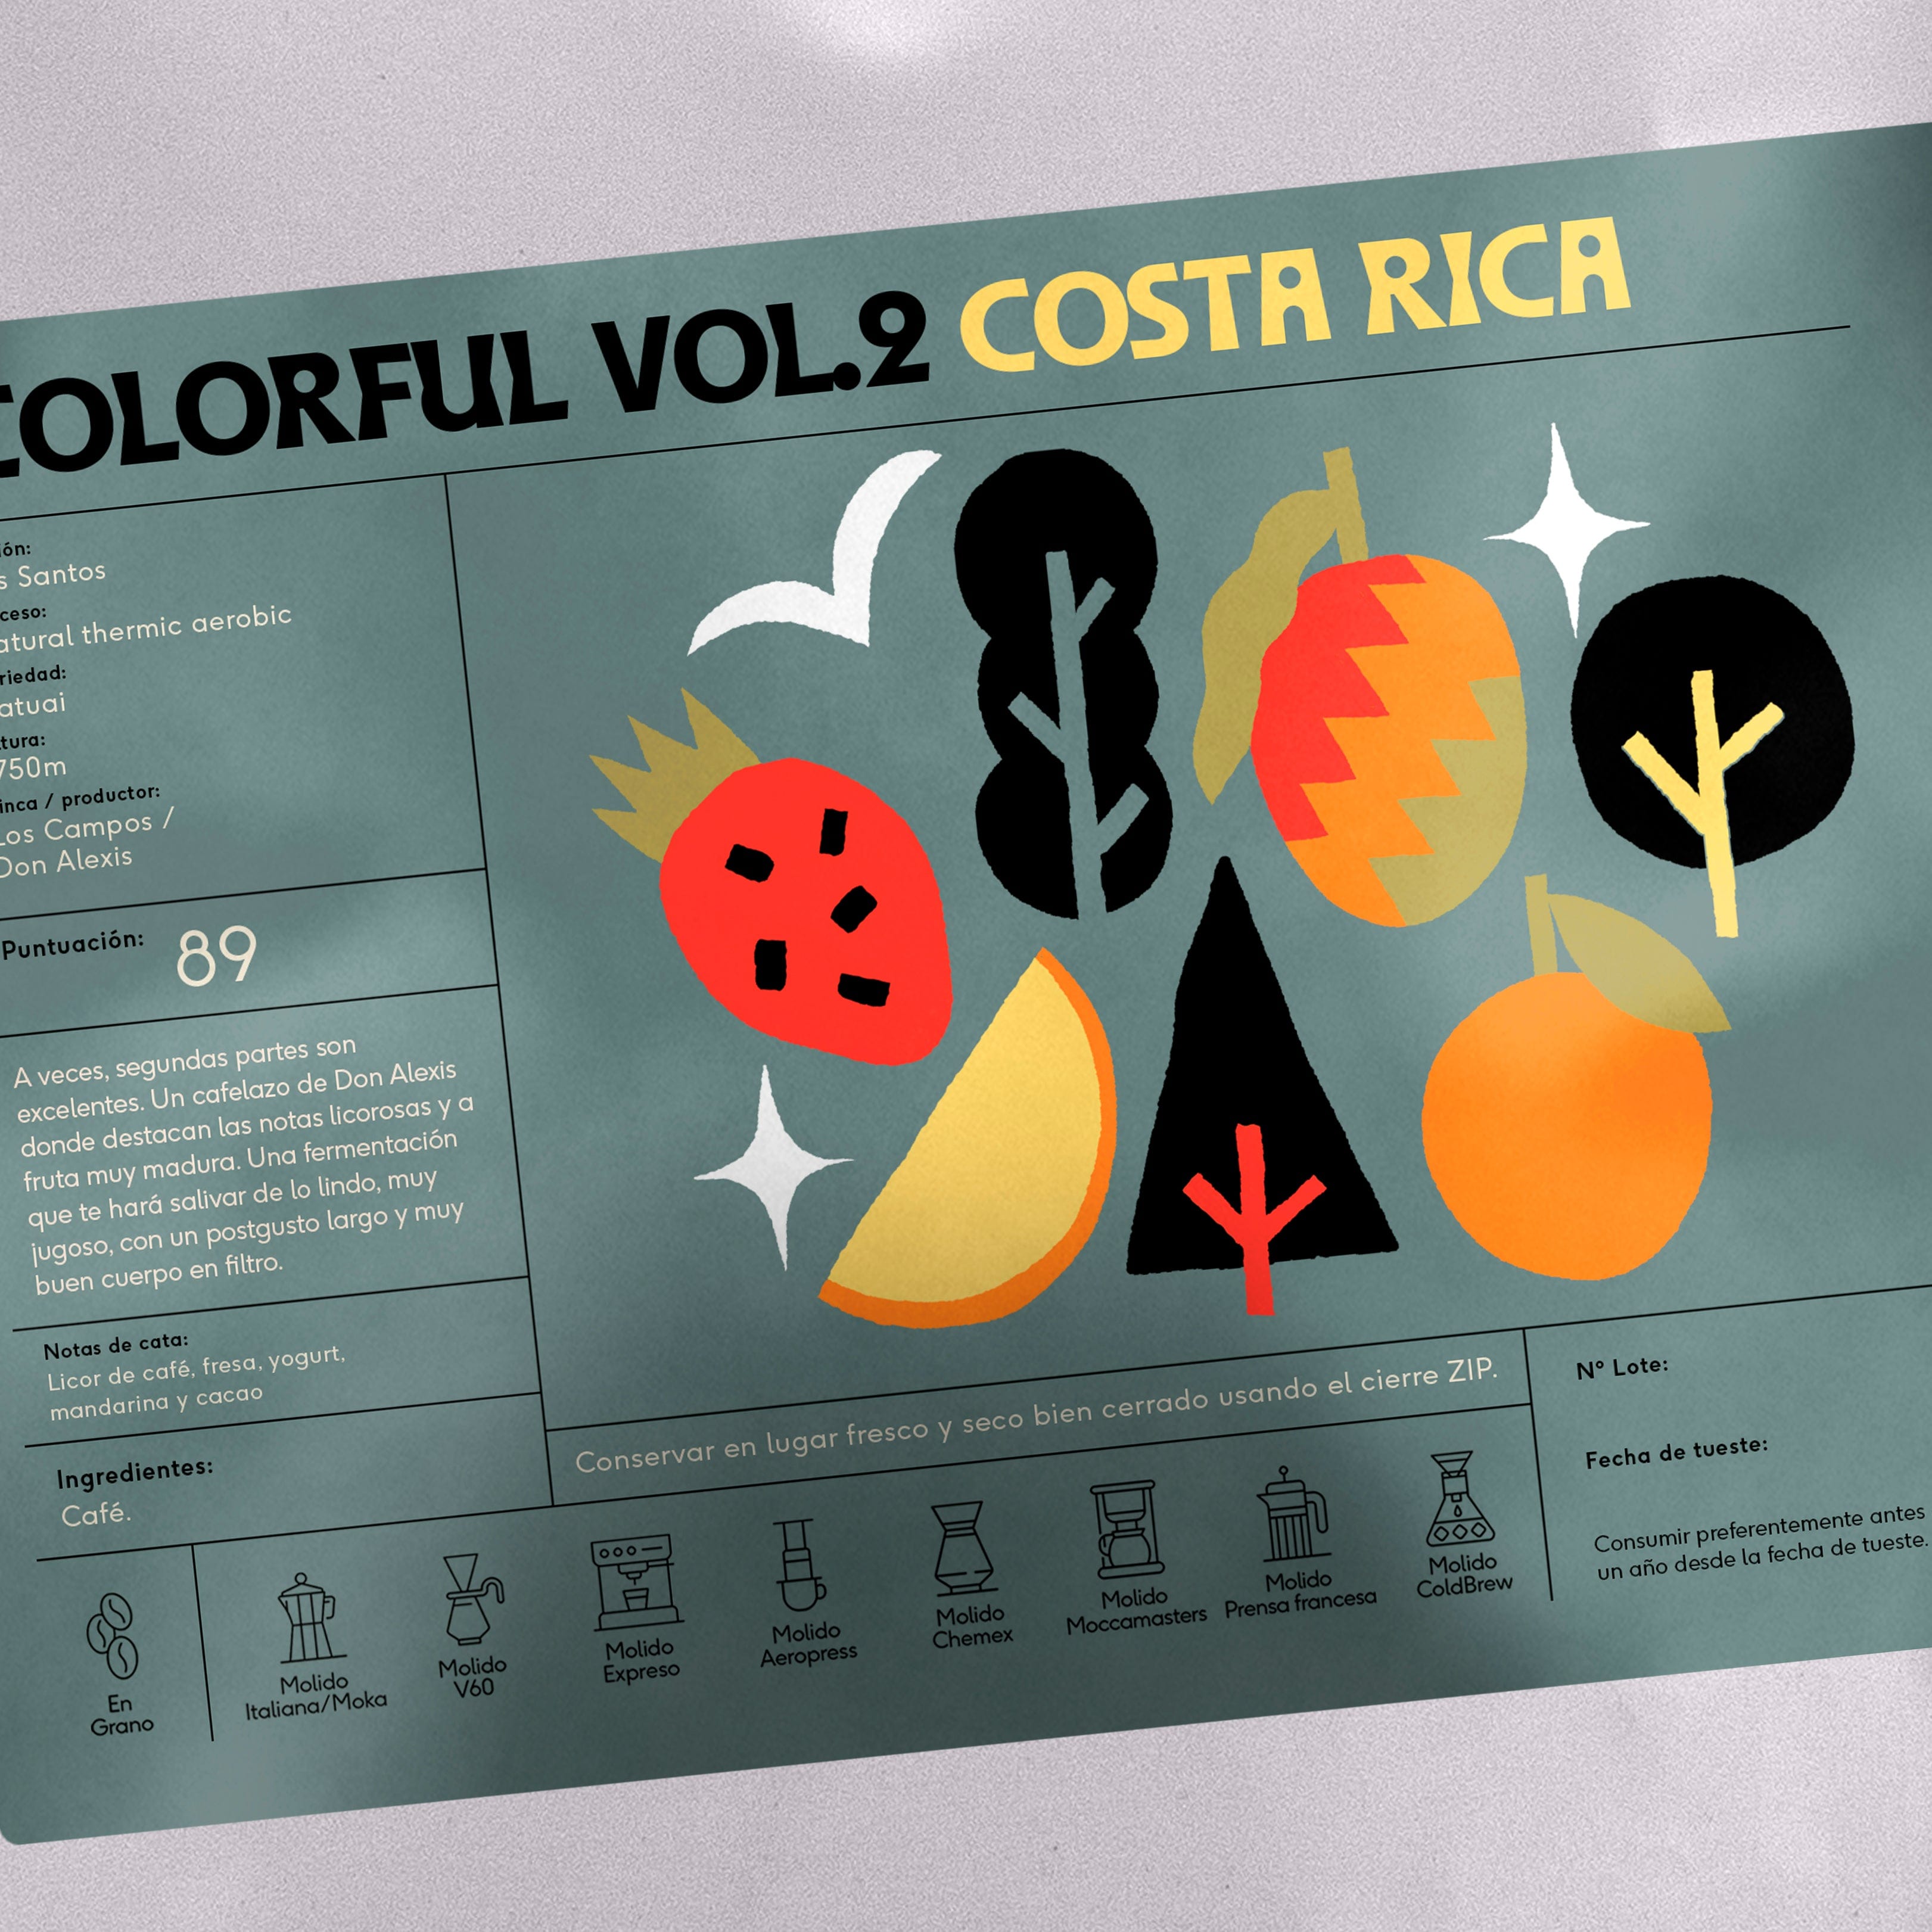 Colorful Vol.2 de Costa Rica